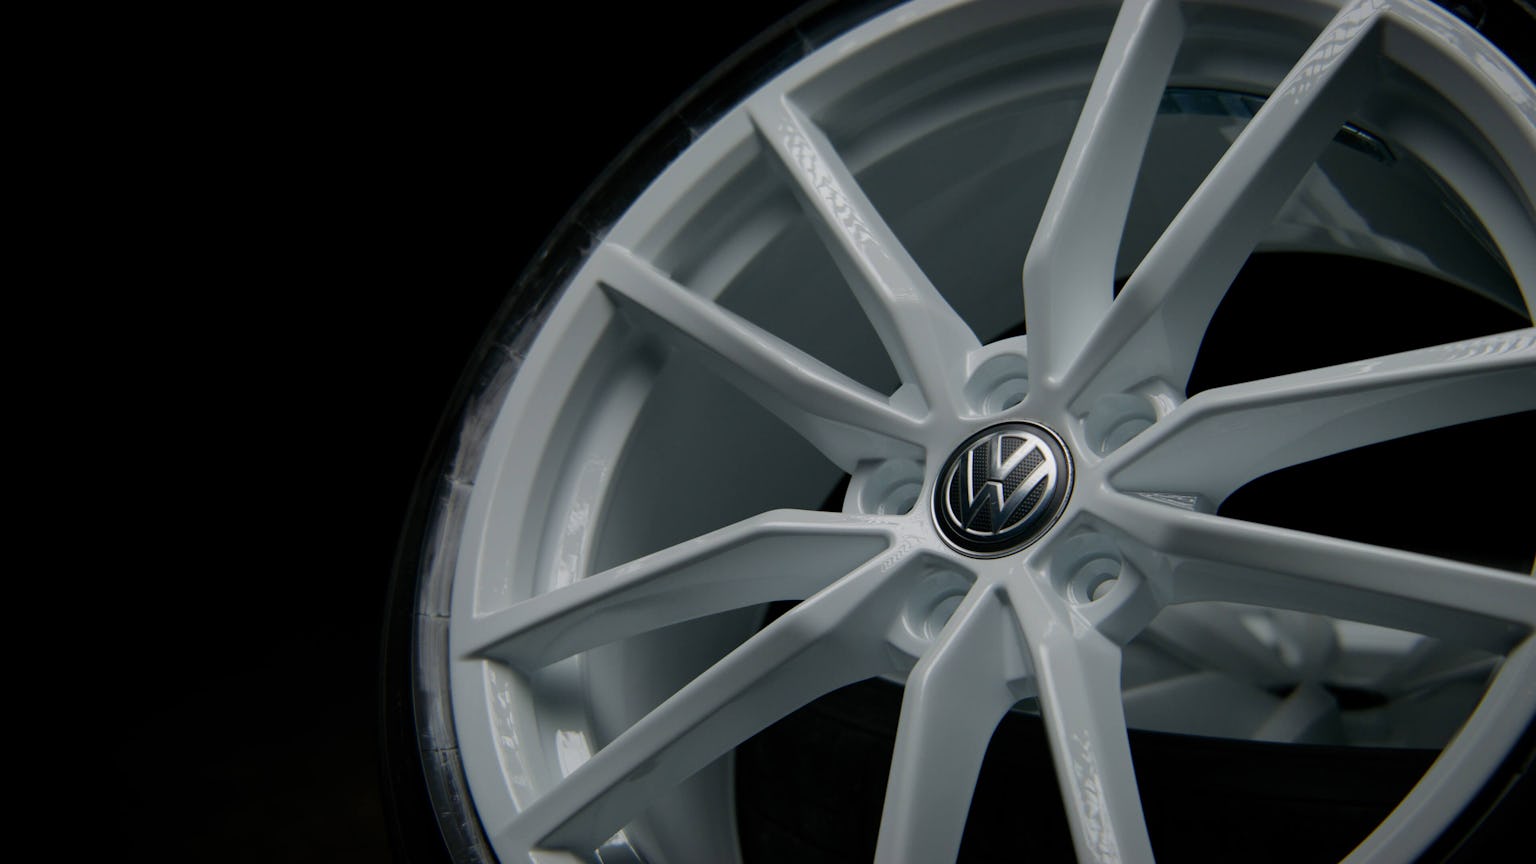 Refurnished Volkswagen alloy wheel in white